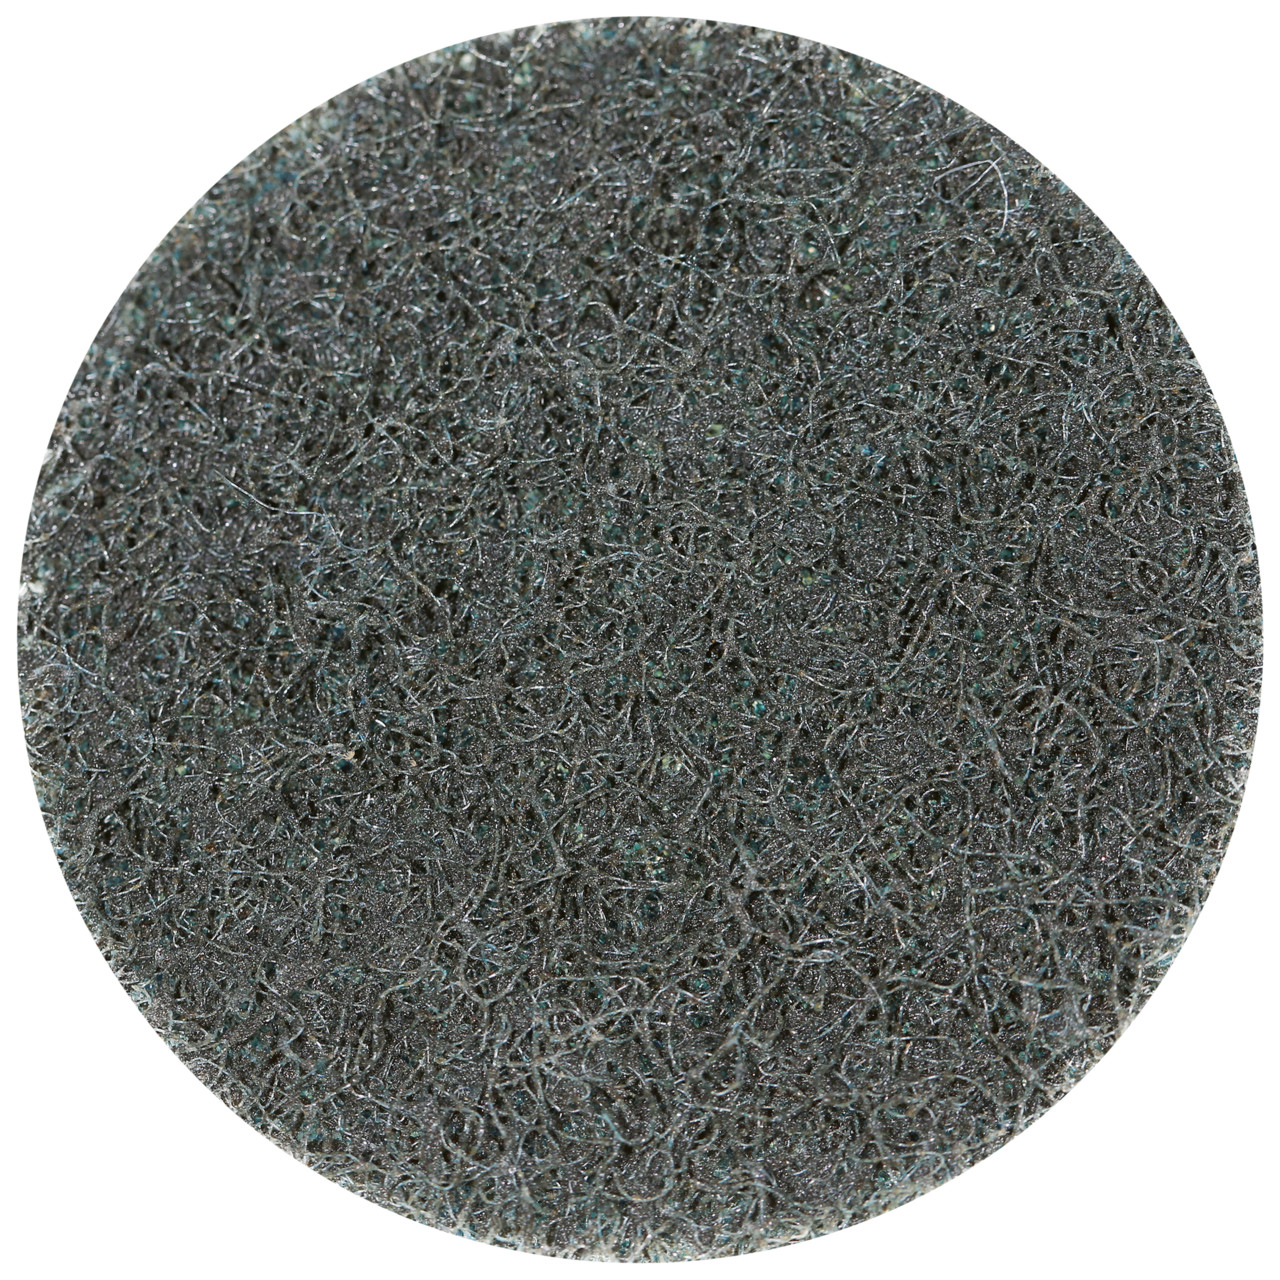 Tyrolit SCM QUICK CHANGE DISC Dimensione 50xR Per acciaio, acciaio inox, metalli non ferrosi, plastica e legno, MEDIO, forma: QDISC, Art. 112546